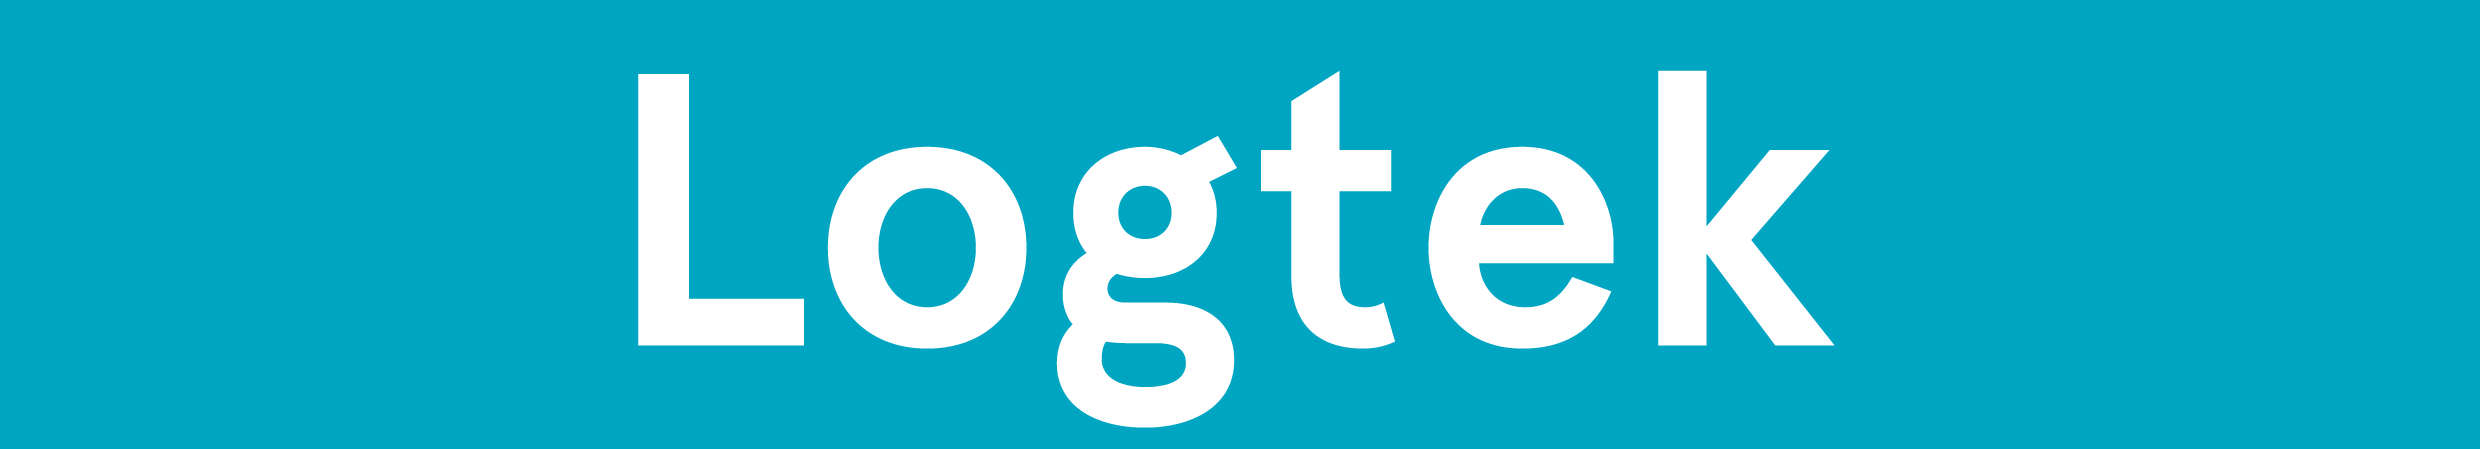 Logtek logo, confirmed until 2025-02-22